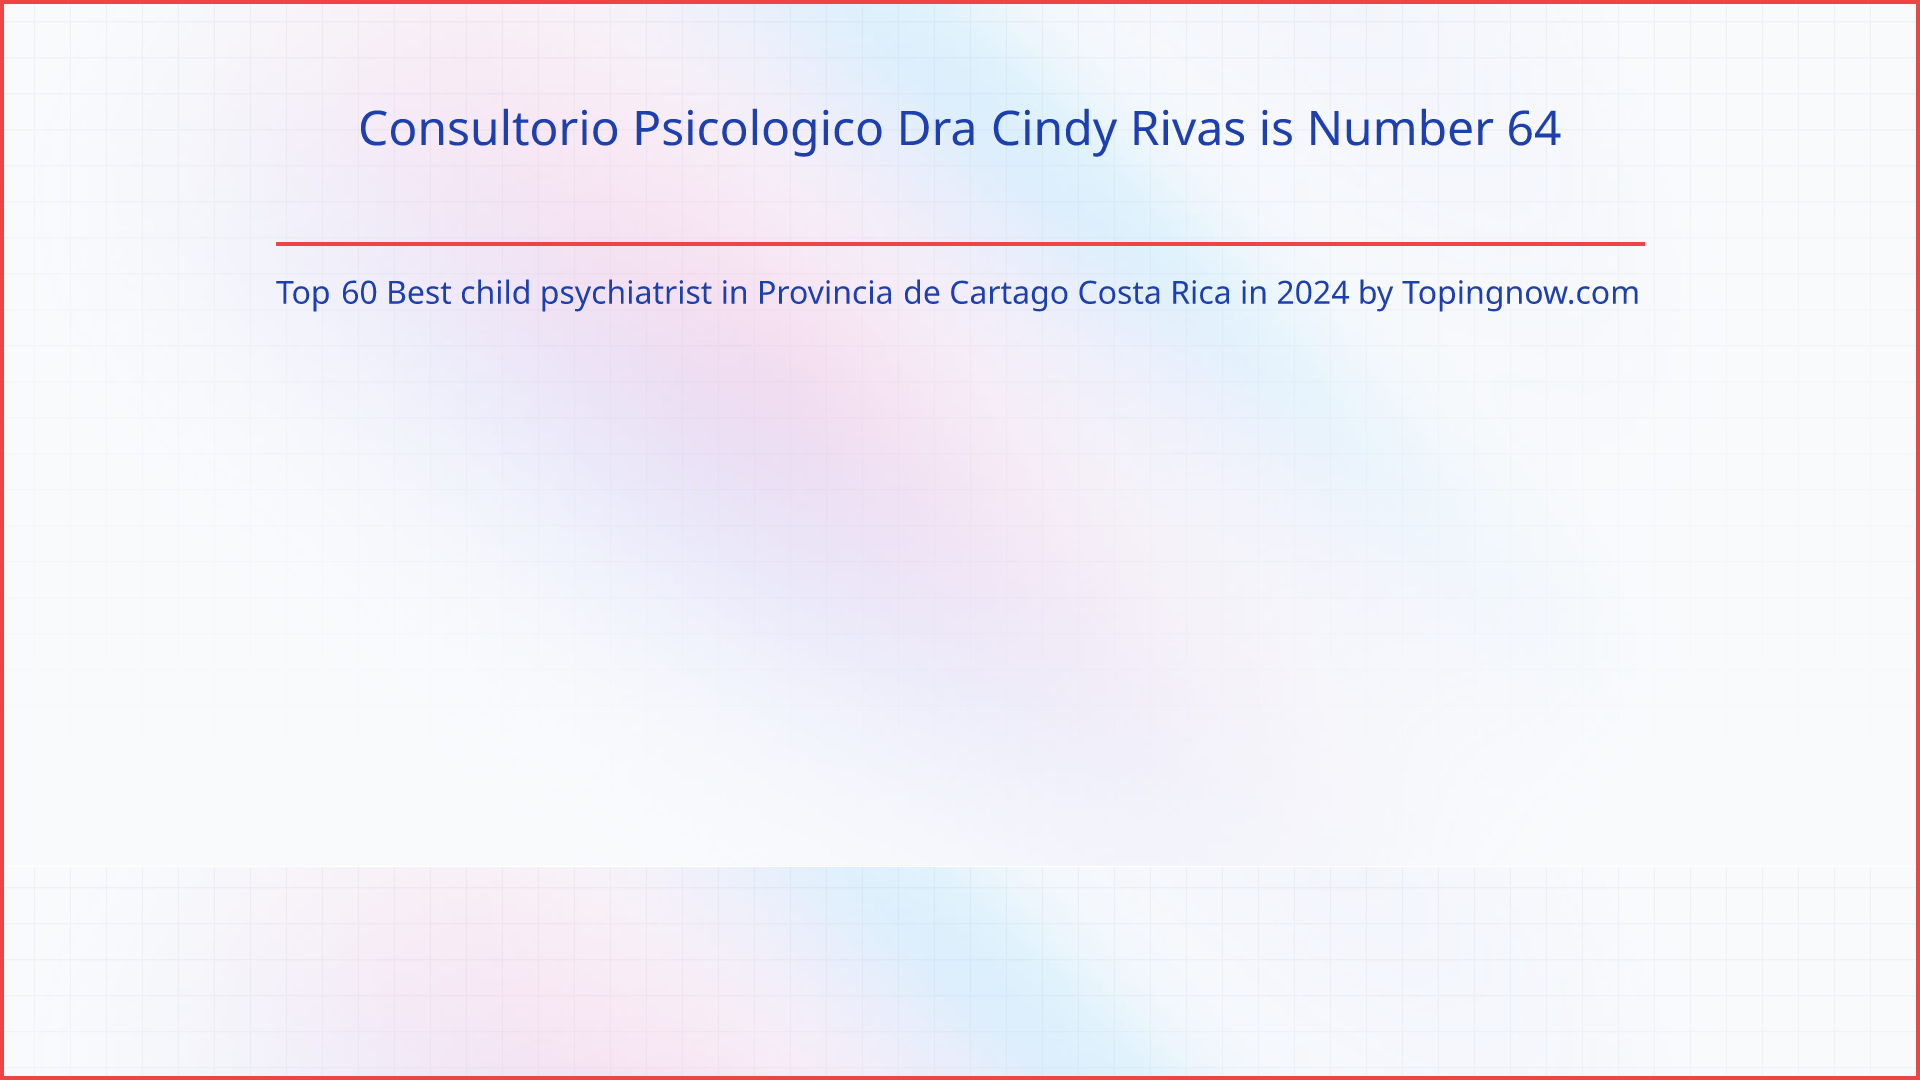 Consultorio Psicologico Dra Cindy Rivas: Top 60 Best child psychiatrist in Provincia de Cartago Costa Rica in 2024